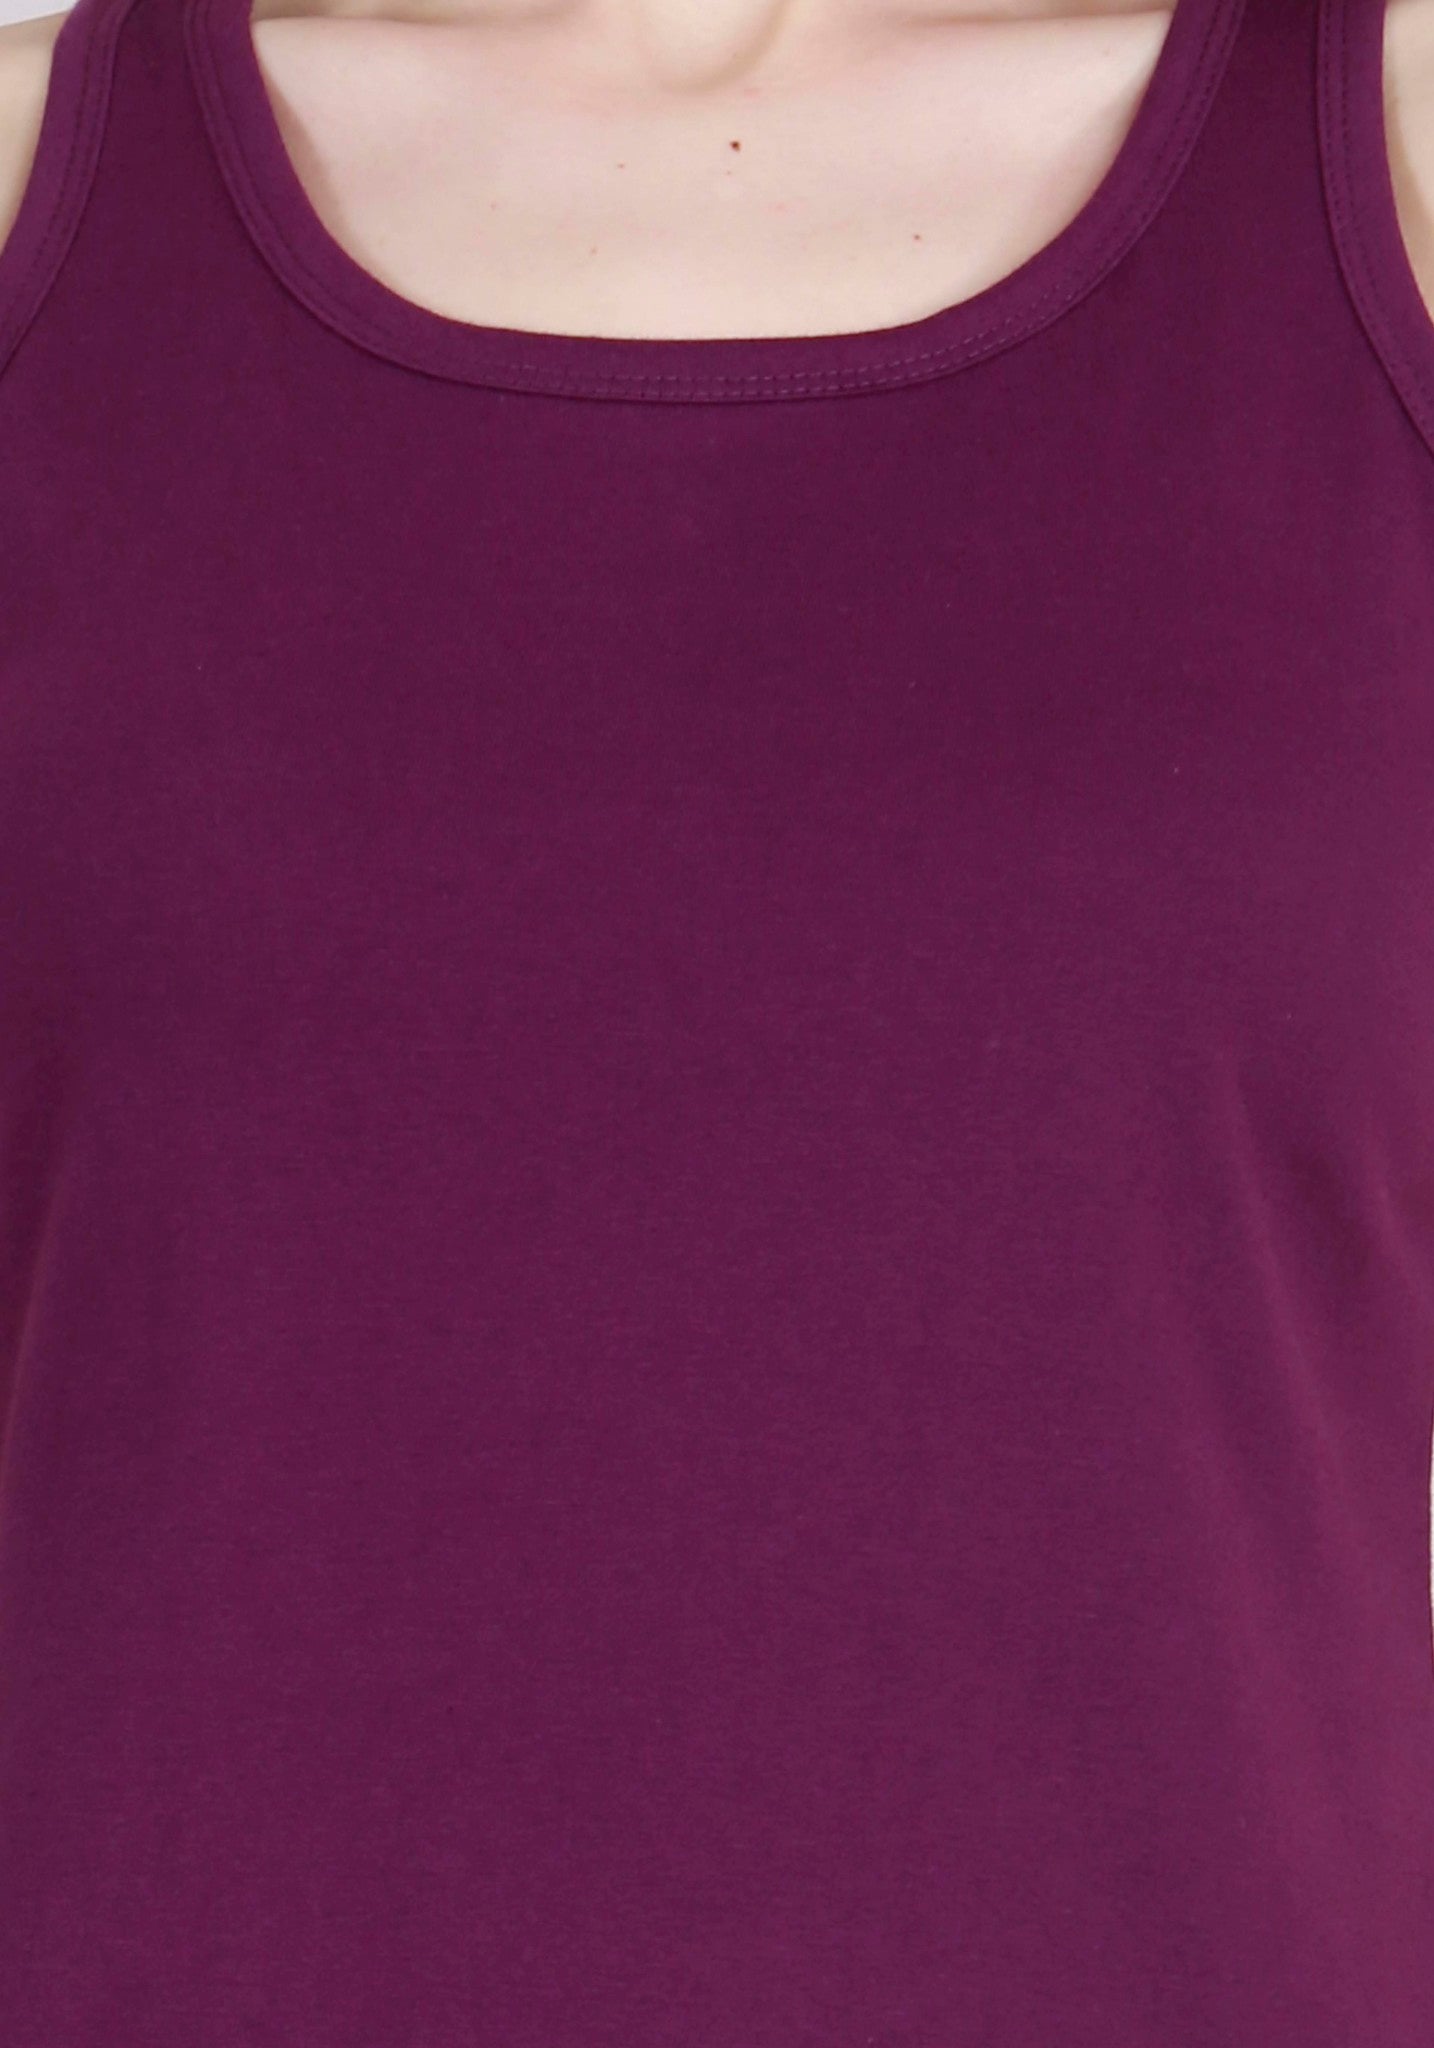 Women's Cotton Plain Sleeveless Purple Color Top